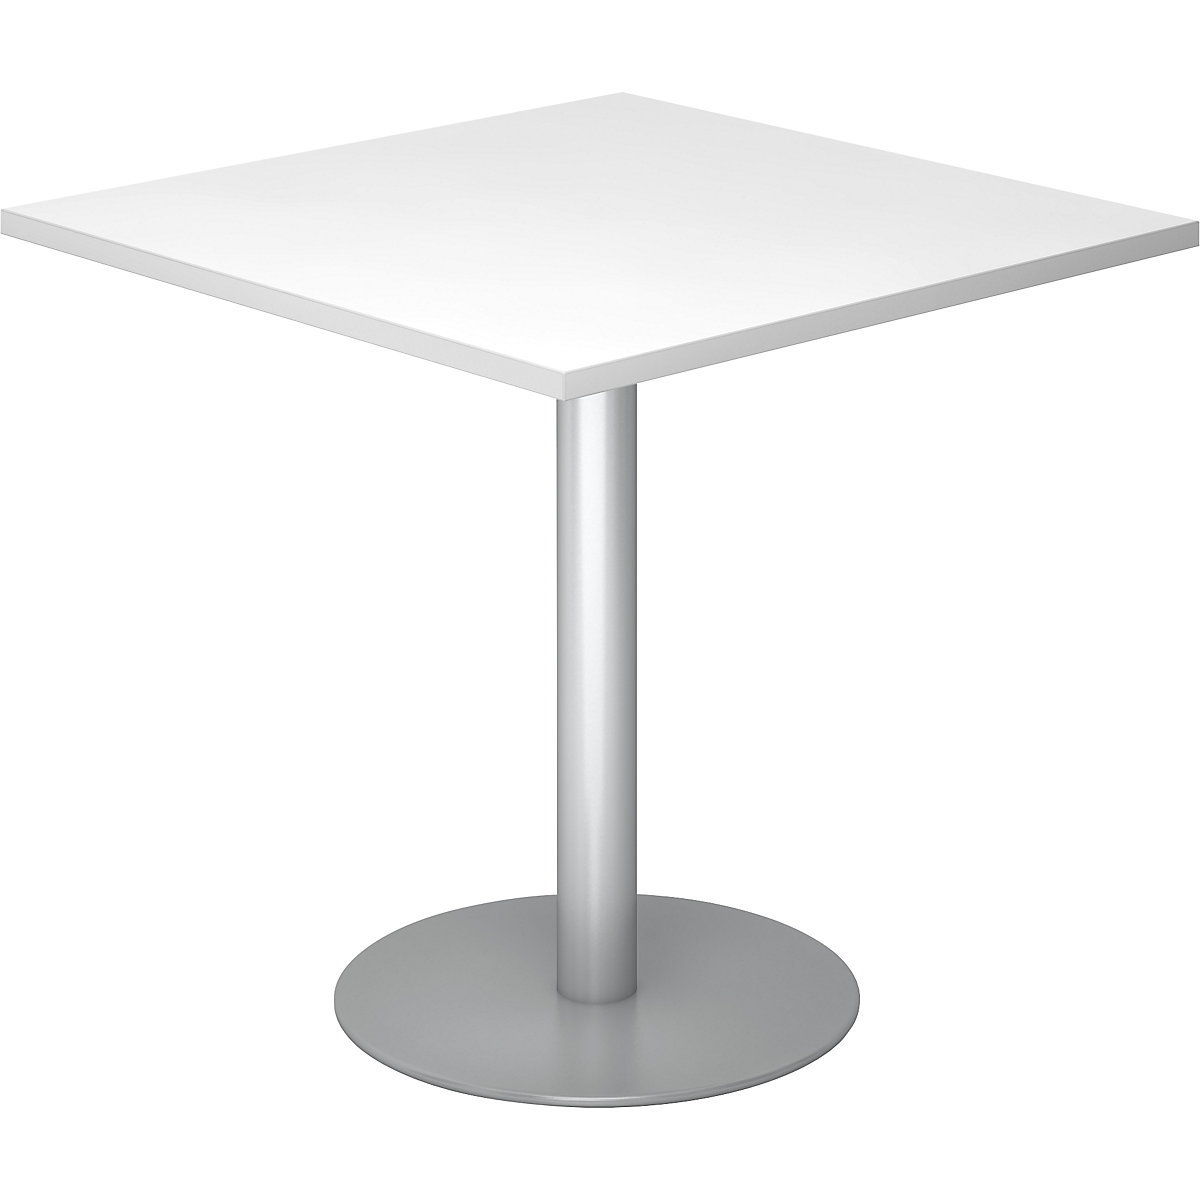 Konferencijski stol, DxŠ 800 x 800 mm, visina 755 mm, postolje u srebrnoj boji, ploča u bijeloj boji-5